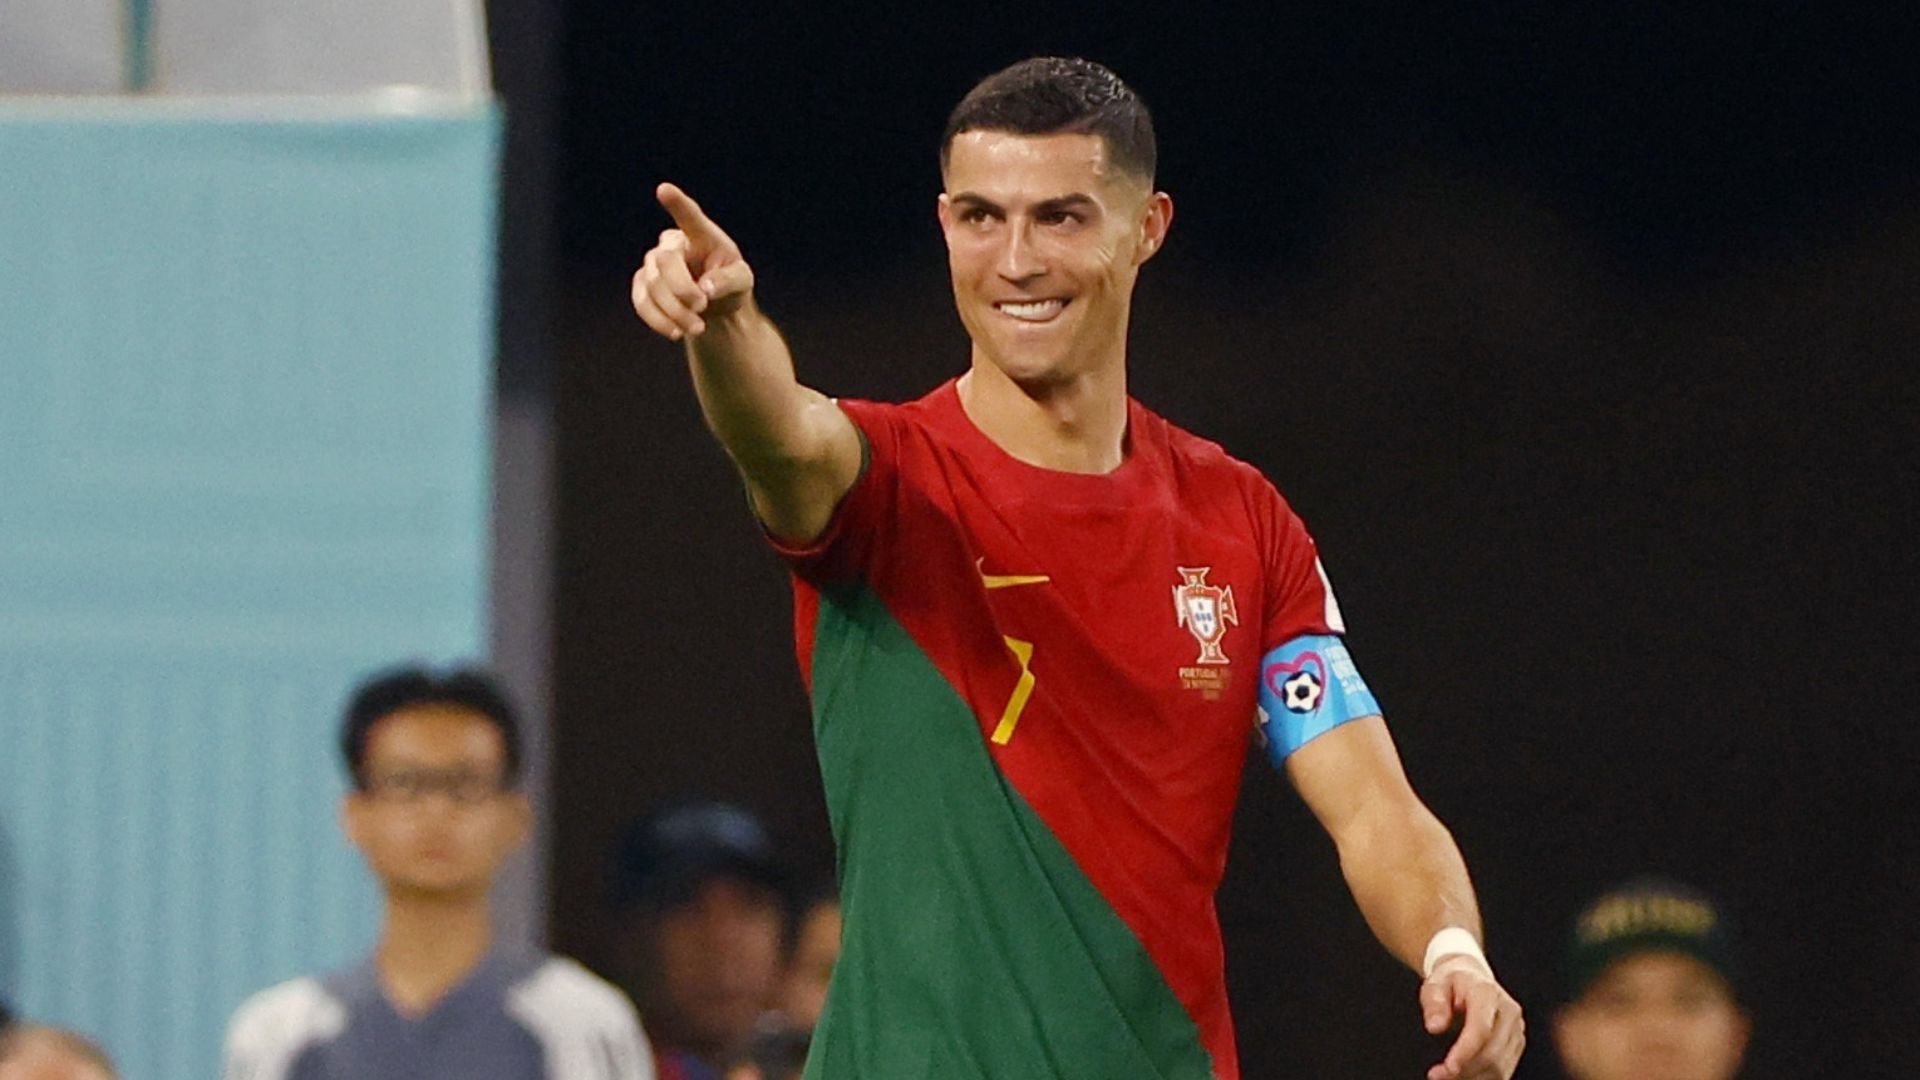 Cristiano Ronaldo rompe todos los récords en Instagram - Para Ganar